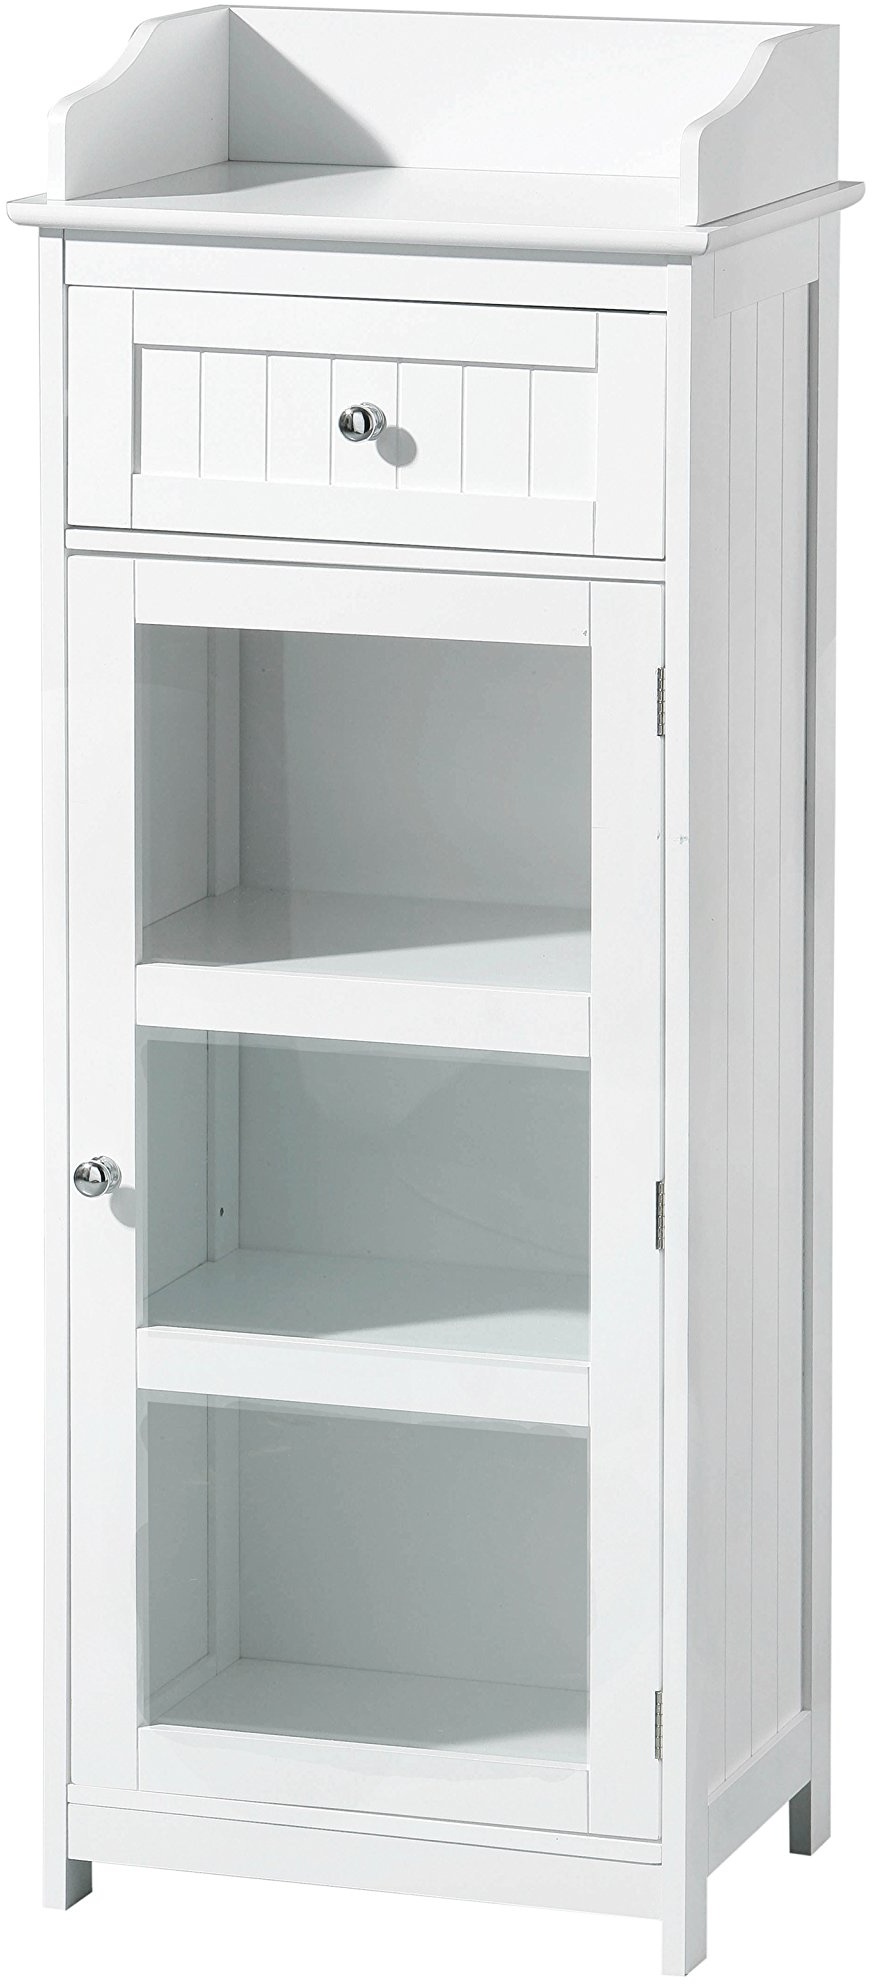 Premier Housewares Portland Freistehende Kommode mit Tür und Schublade 119x45x33 cm weiß, MDF, Weiß, 33x45x119